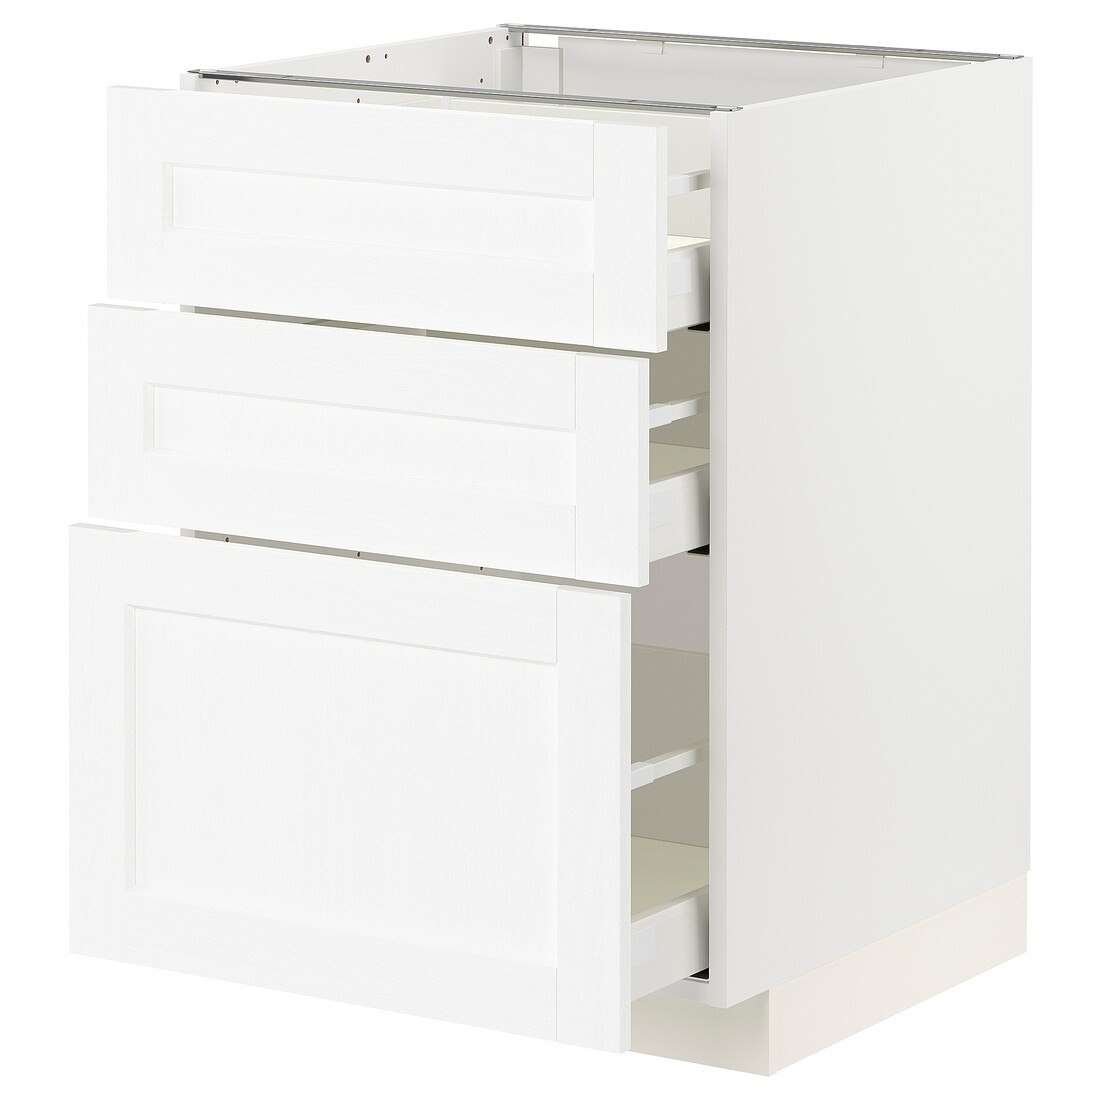 IKEA METOD МЕТОД / MAXIMERA МАКСИМЕРА Напольный шкаф с 3 ящиками, белый Enköping / белый имитация дерева, 60x60 см 49473427 494.734.27